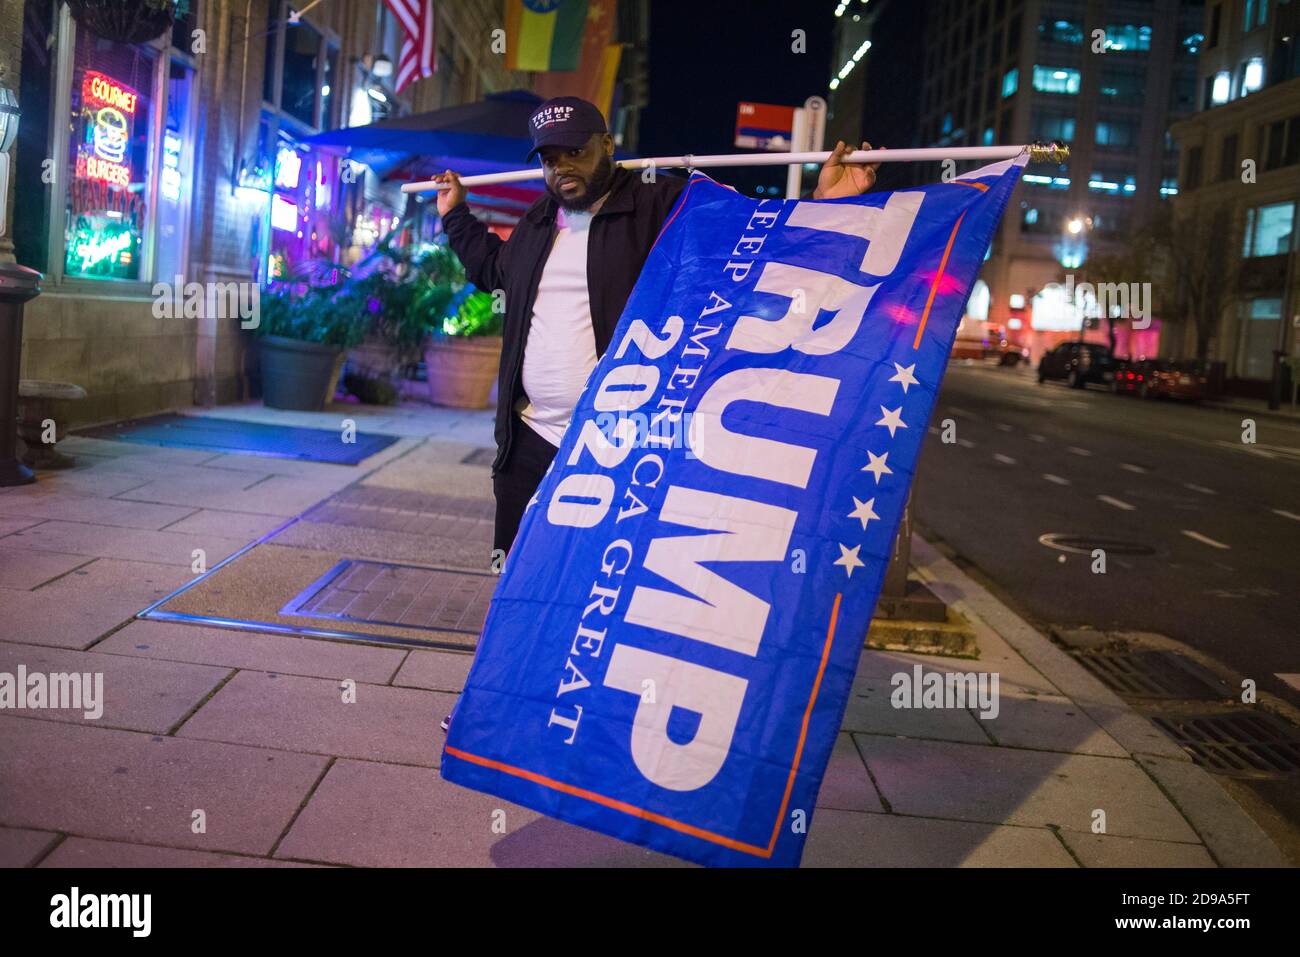 Washington DC, États-Unis, 3 novembre 2020. Soutien de Black Trump avec drapeau le soir des élections, Washington DC, États-Unis. Yuriy Zahvoyskyy / Alamy Live News Banque D'Images